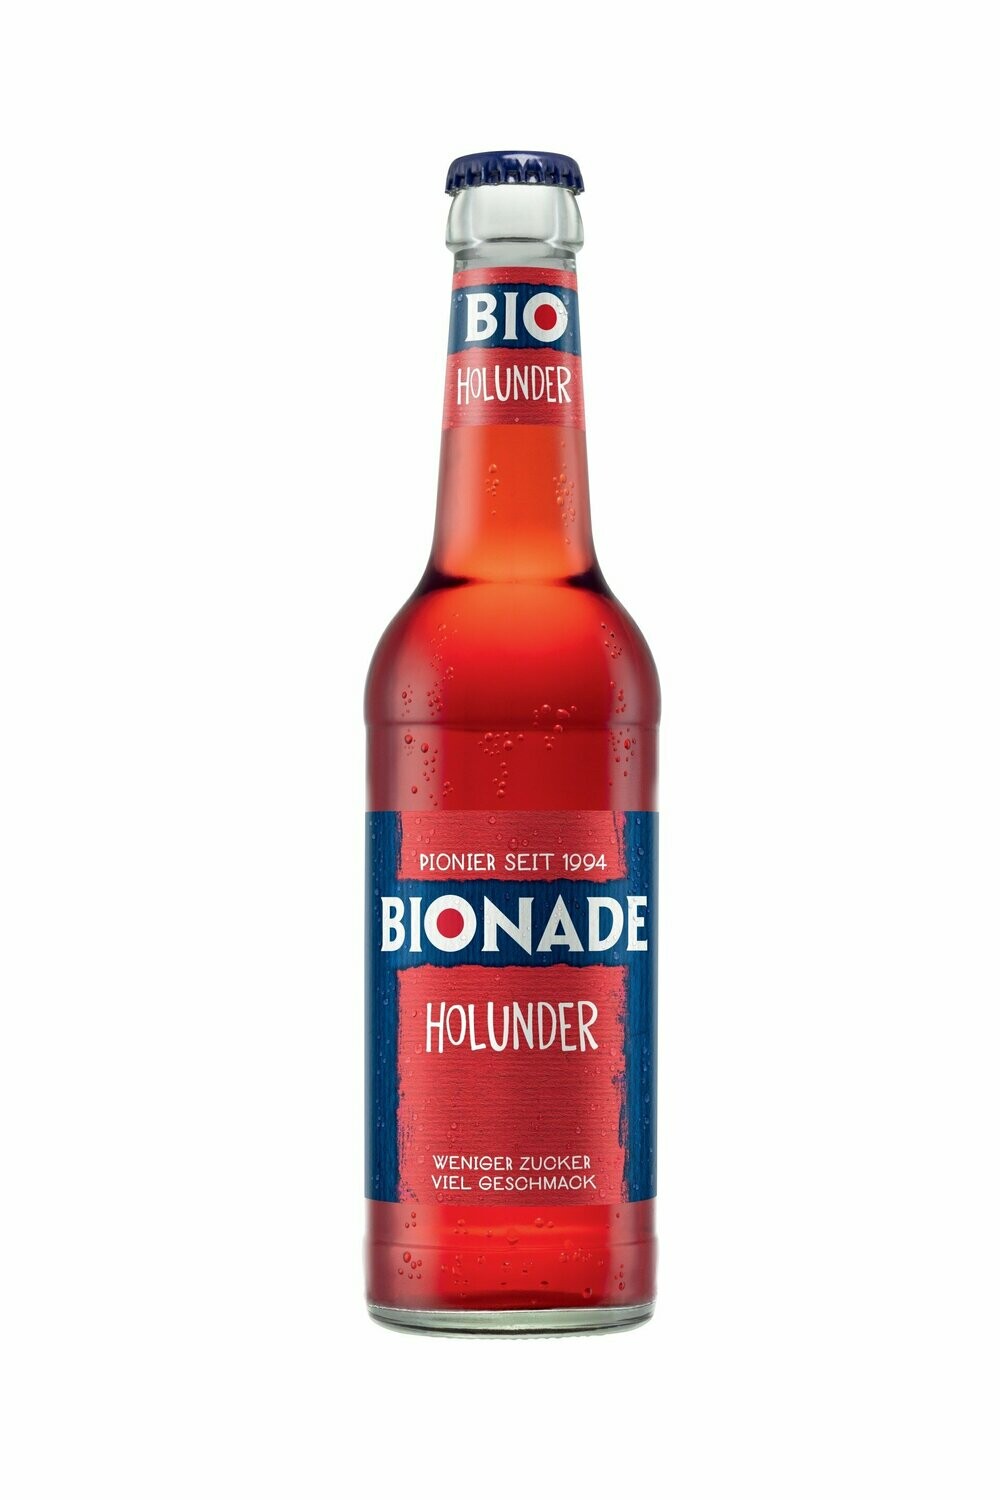 Bionade Holunder
(12x 0,33l FL Glas 11,99€ inkl. MwSt. zzgl. Pfand)